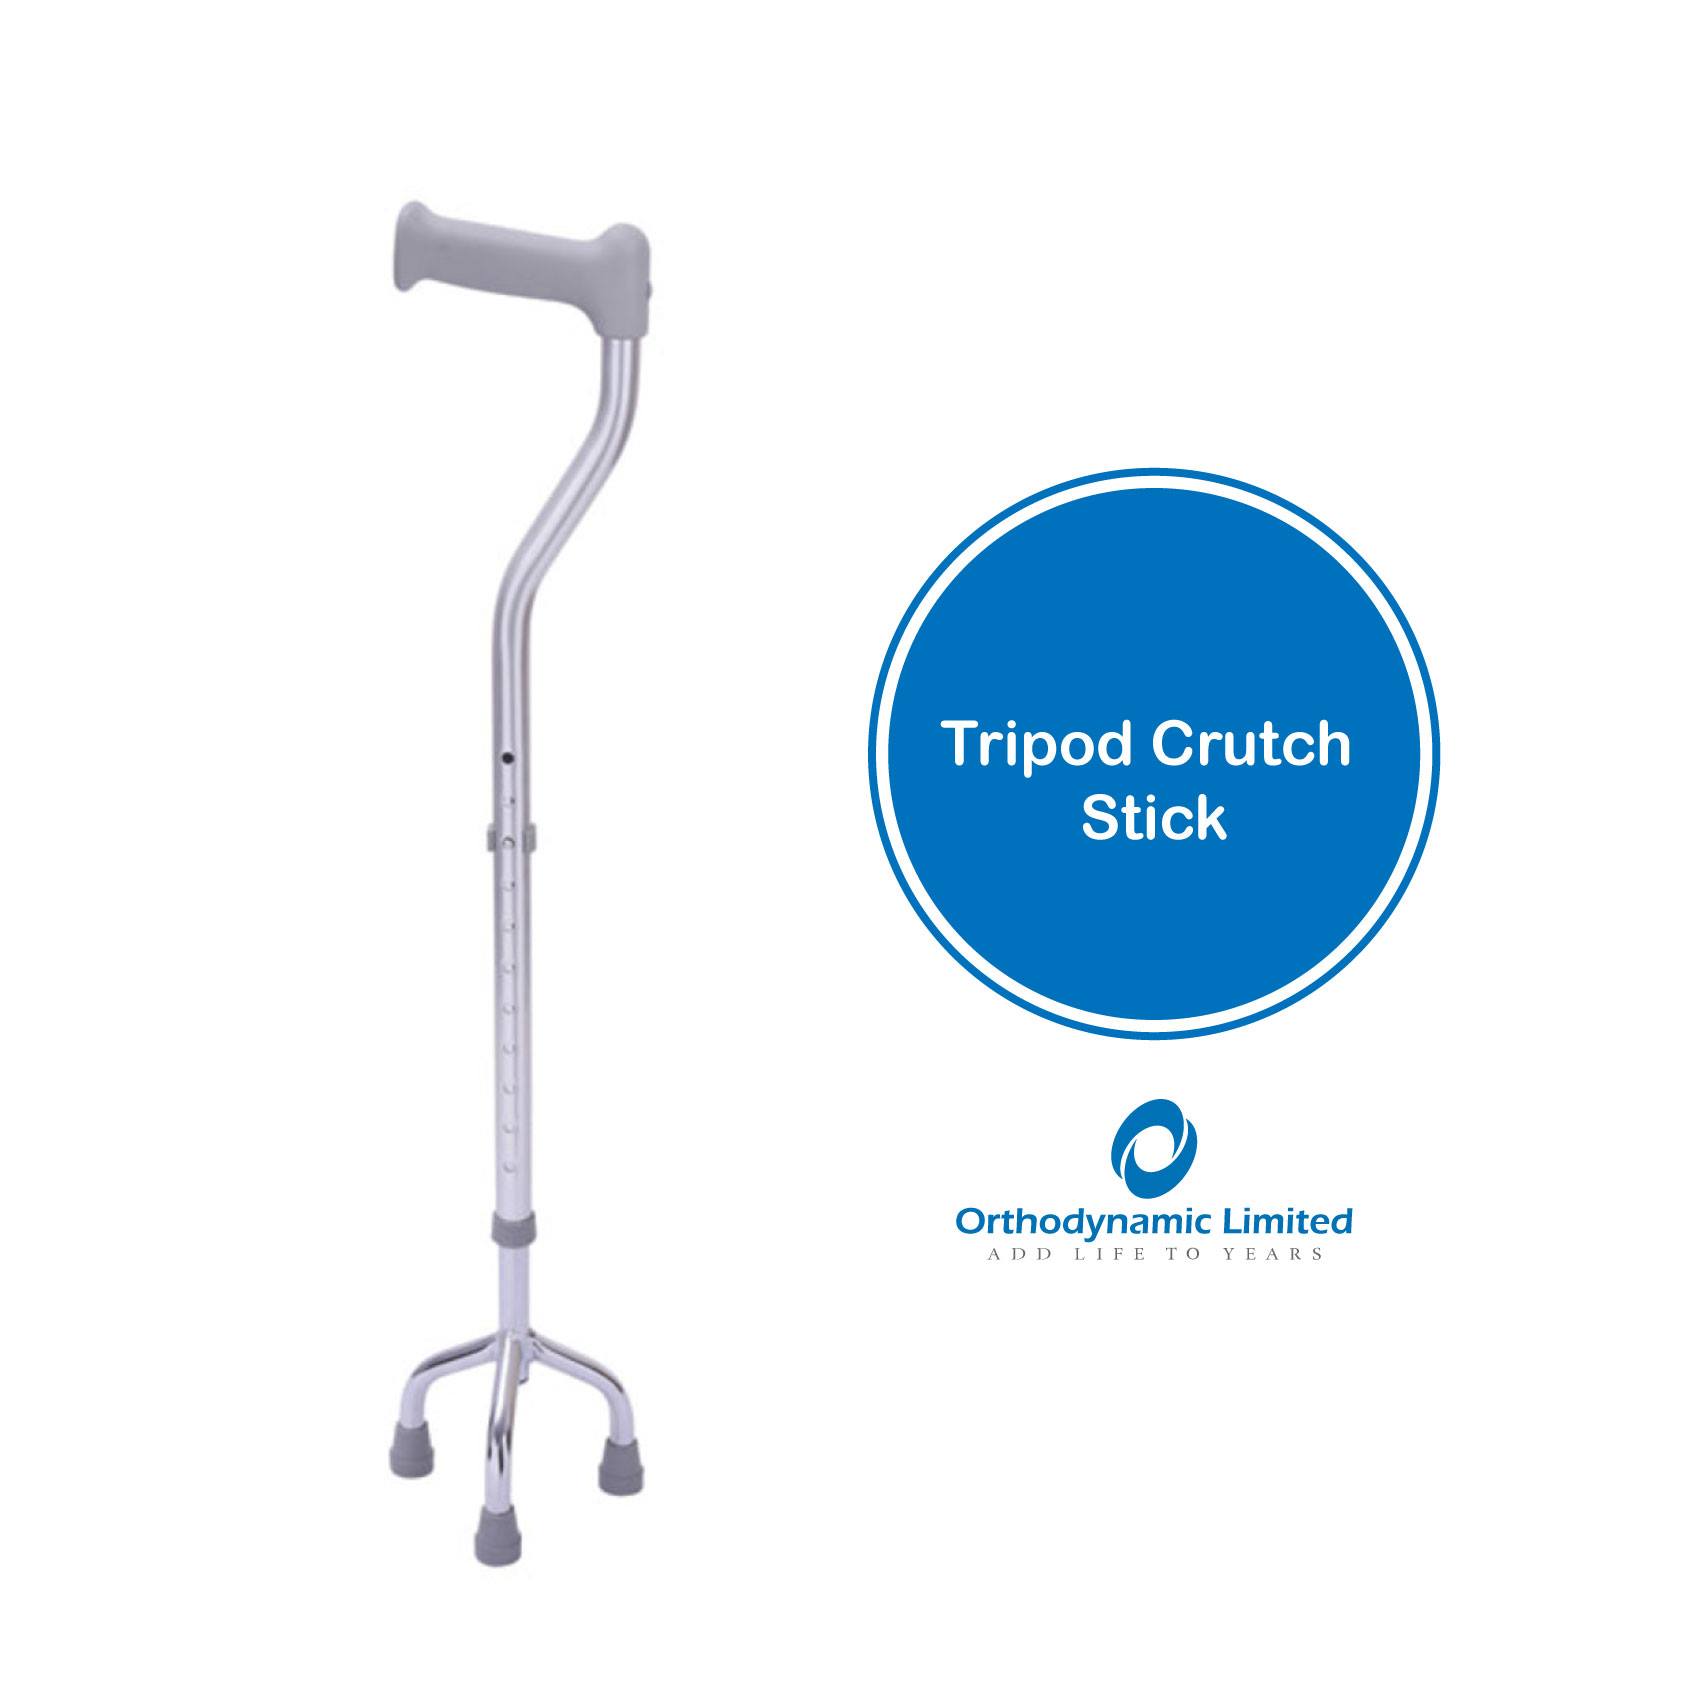 Tripod Crutch Stick